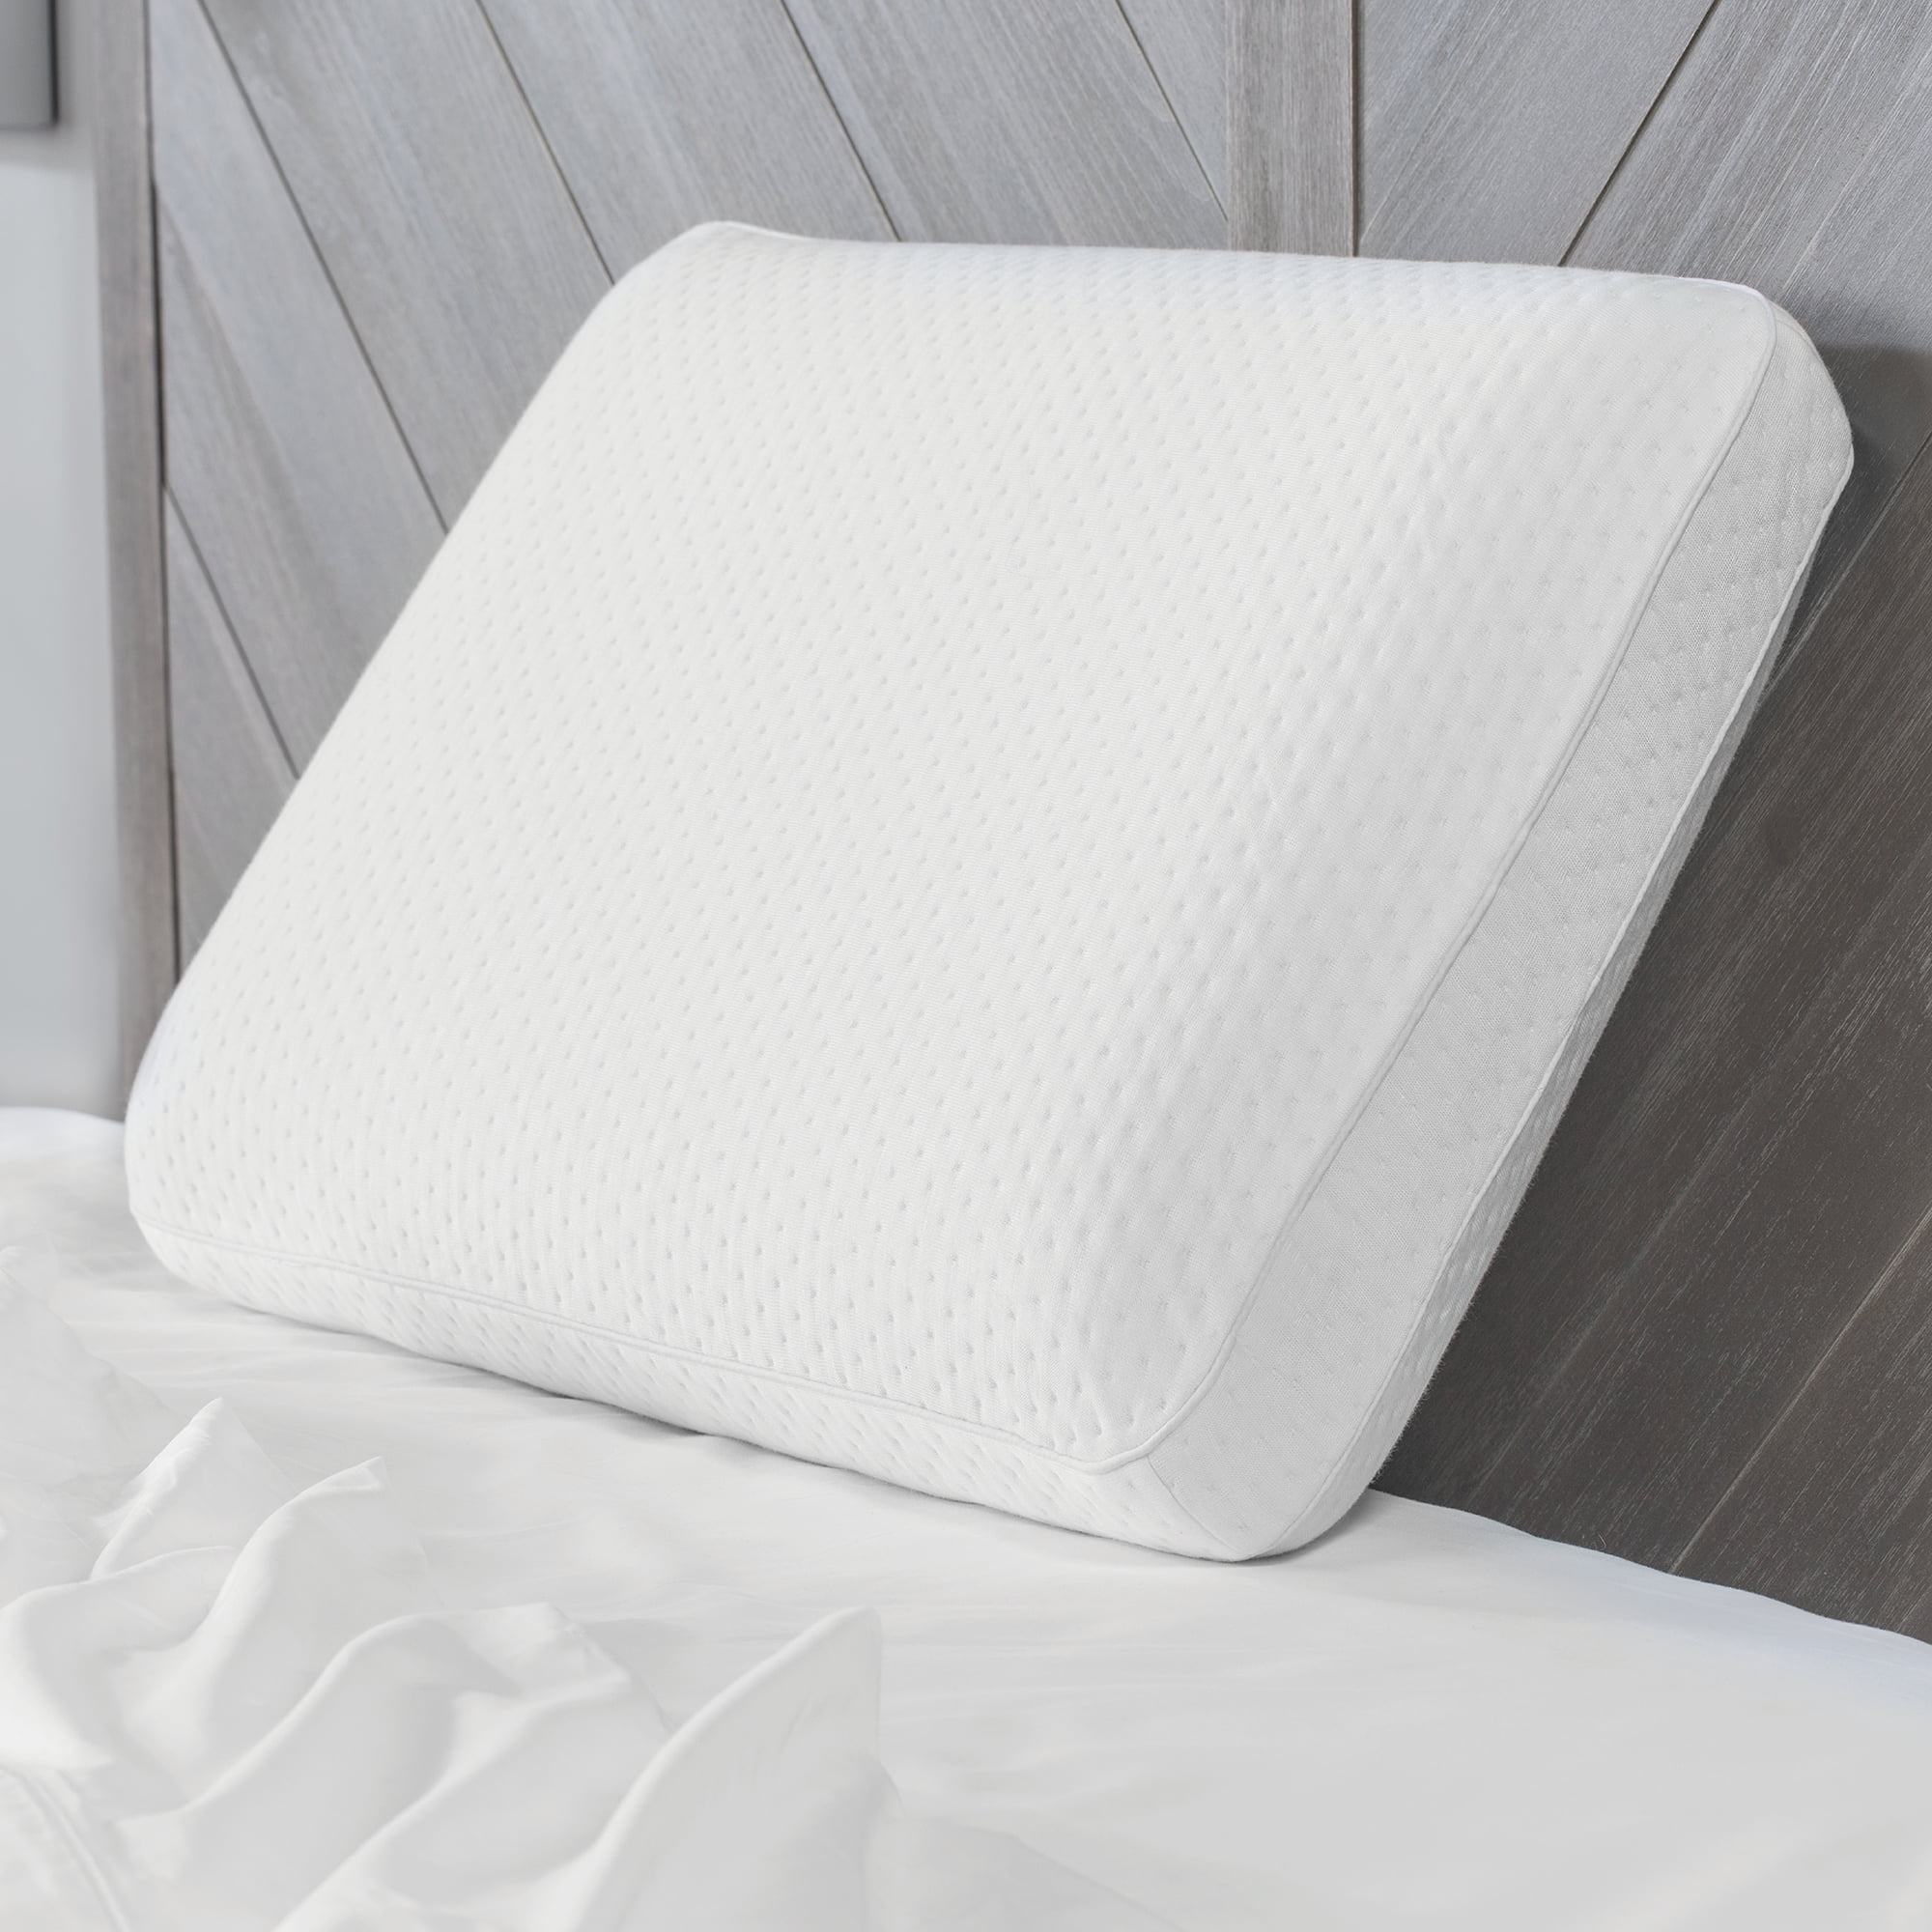 NEW Sensorpedic SensorGel Cool Gel Infused Memory Foam Contour Pillow 21 x 14 